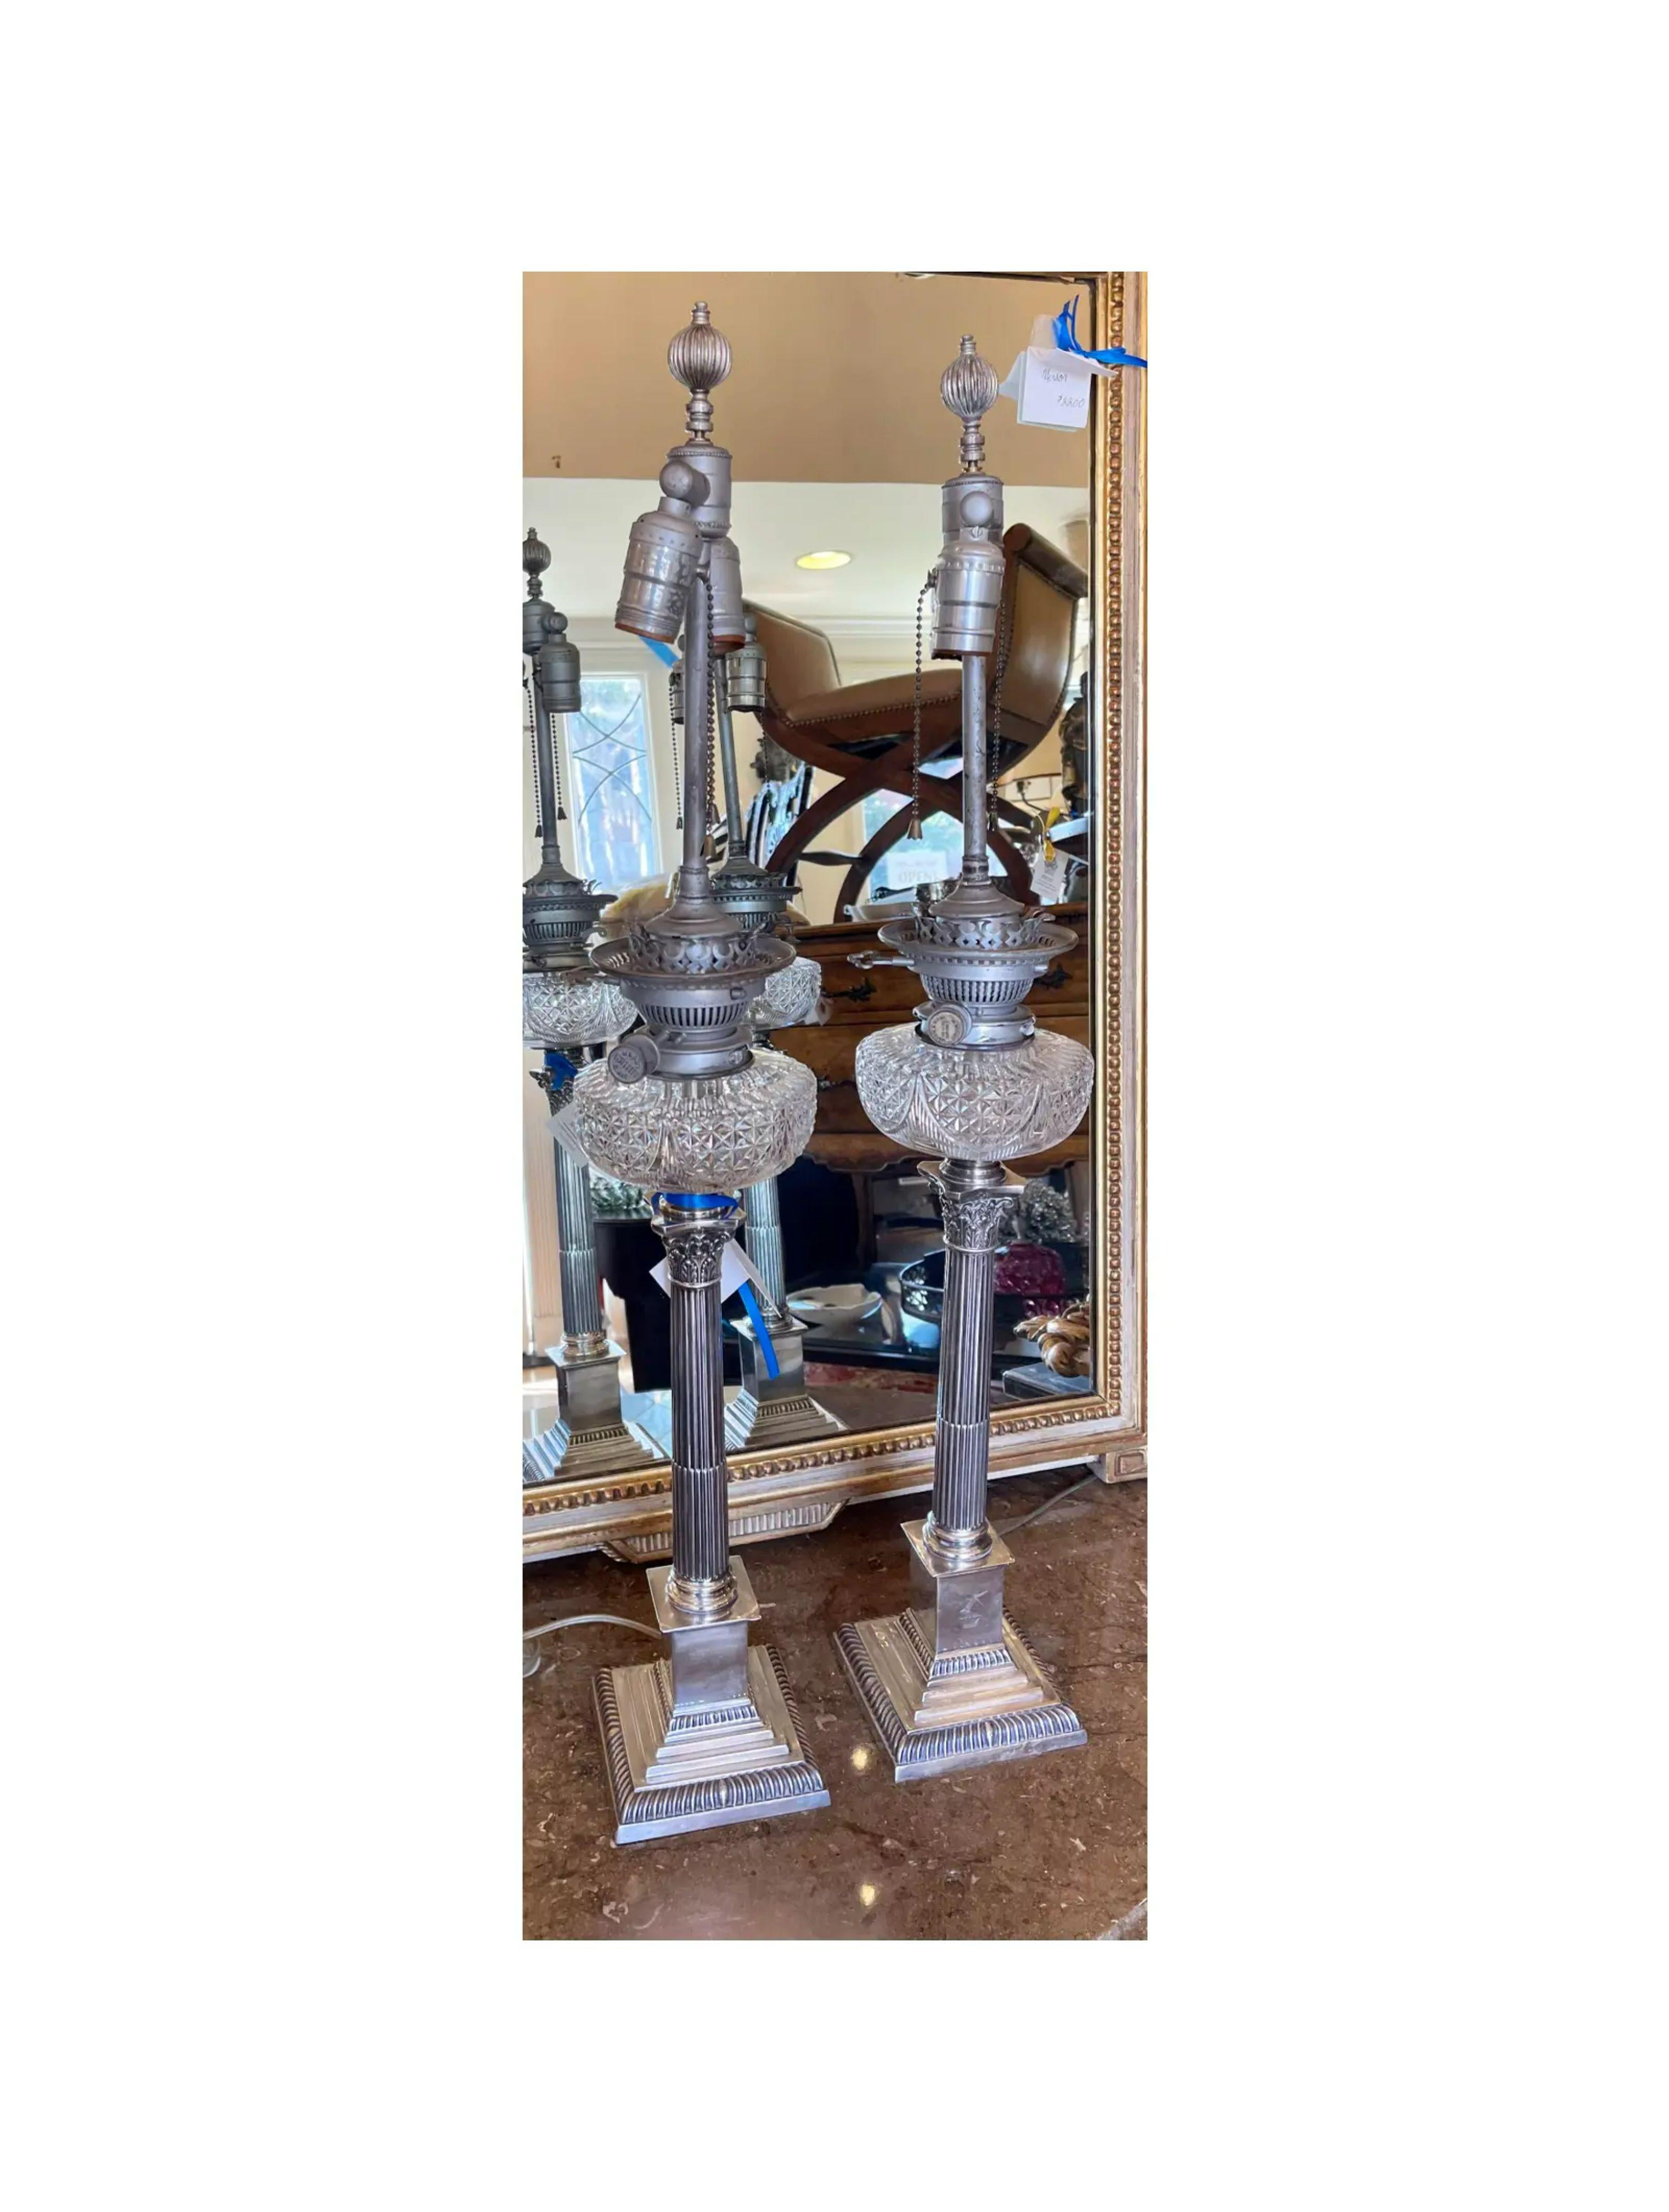 Antique Mappin & Webb Neoclassical Column Silver & Cut Crystal Table Lamps - a Pair. Autrefois lampes à huile, ces lampes argentées ont ensuite été électrifiées, restant les pots à huile d'origine.

Informations complémentaires : 
Matériaux :